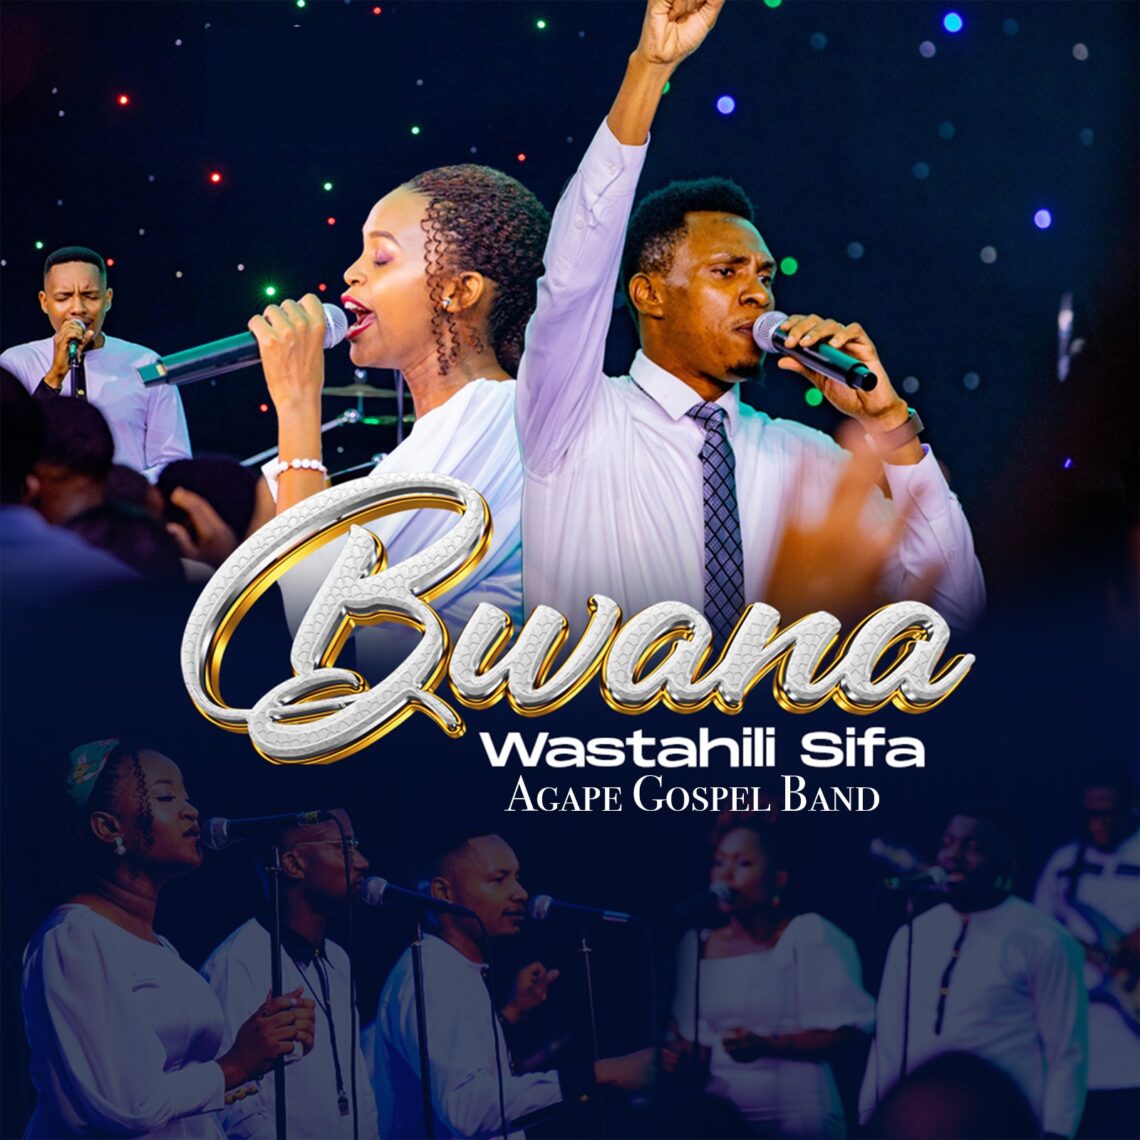 Download Audio Mp3 | Agape Gospel Band – Bwana Wastahili Sifa